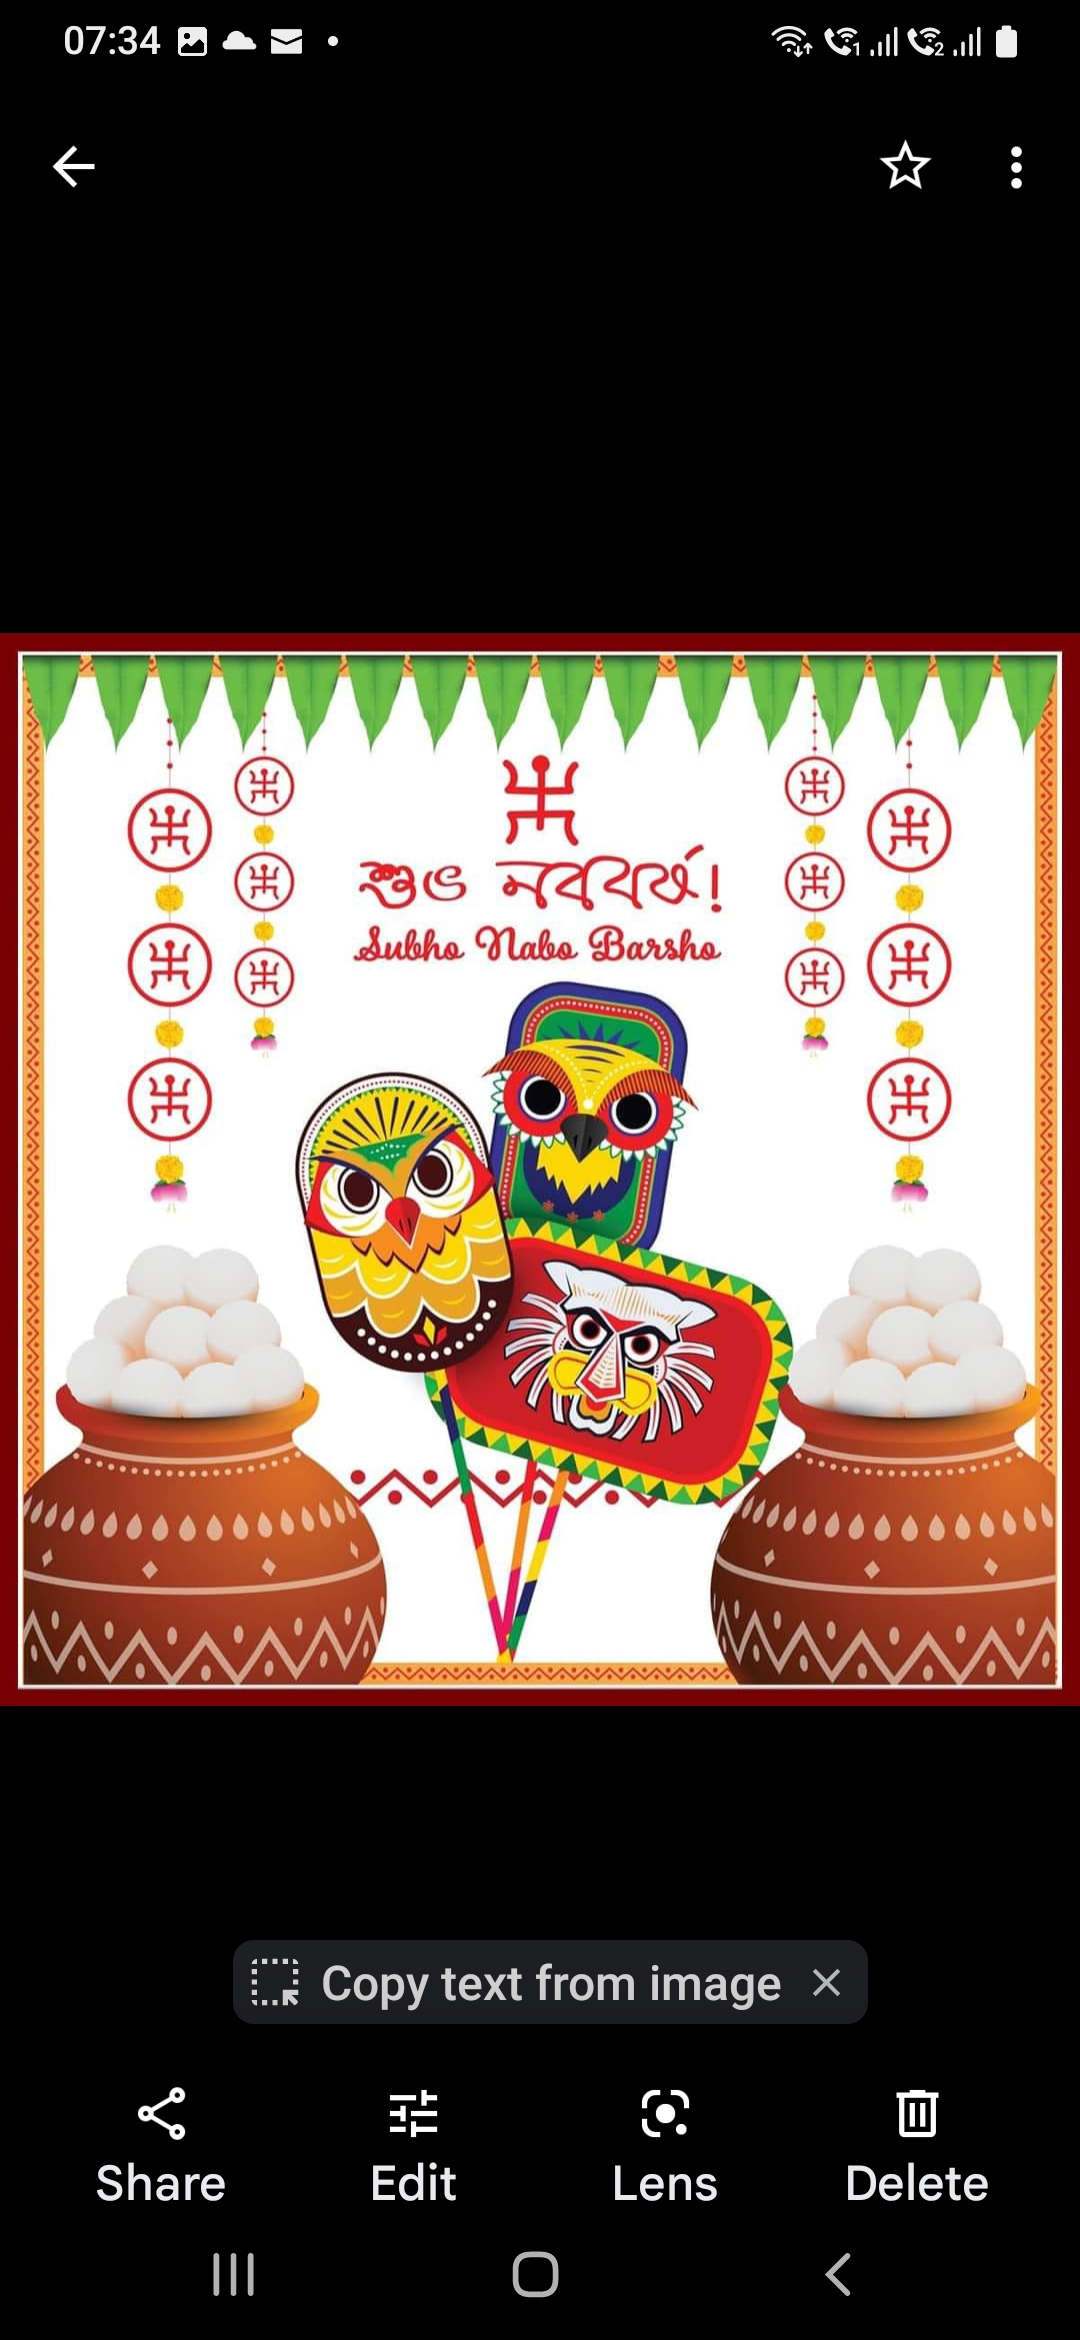 Celebration of Bengali New year